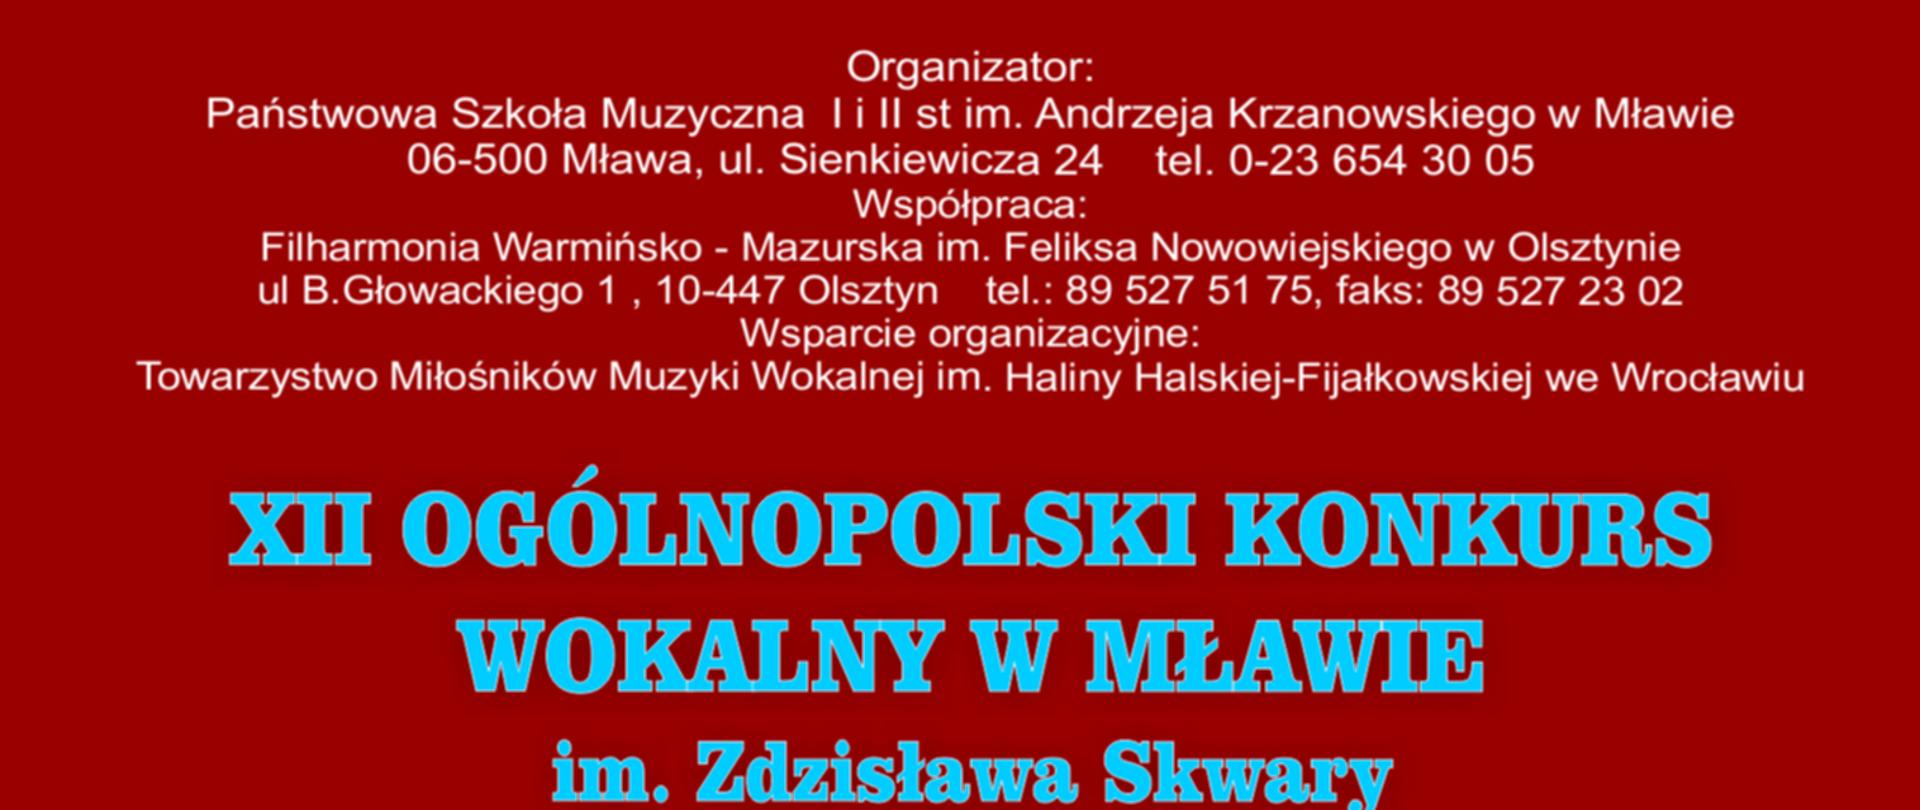 Plakat na czerwonym tle informujący o harmonogramie Ogólnopolskiego Konkursu Wokalnego w Mławie